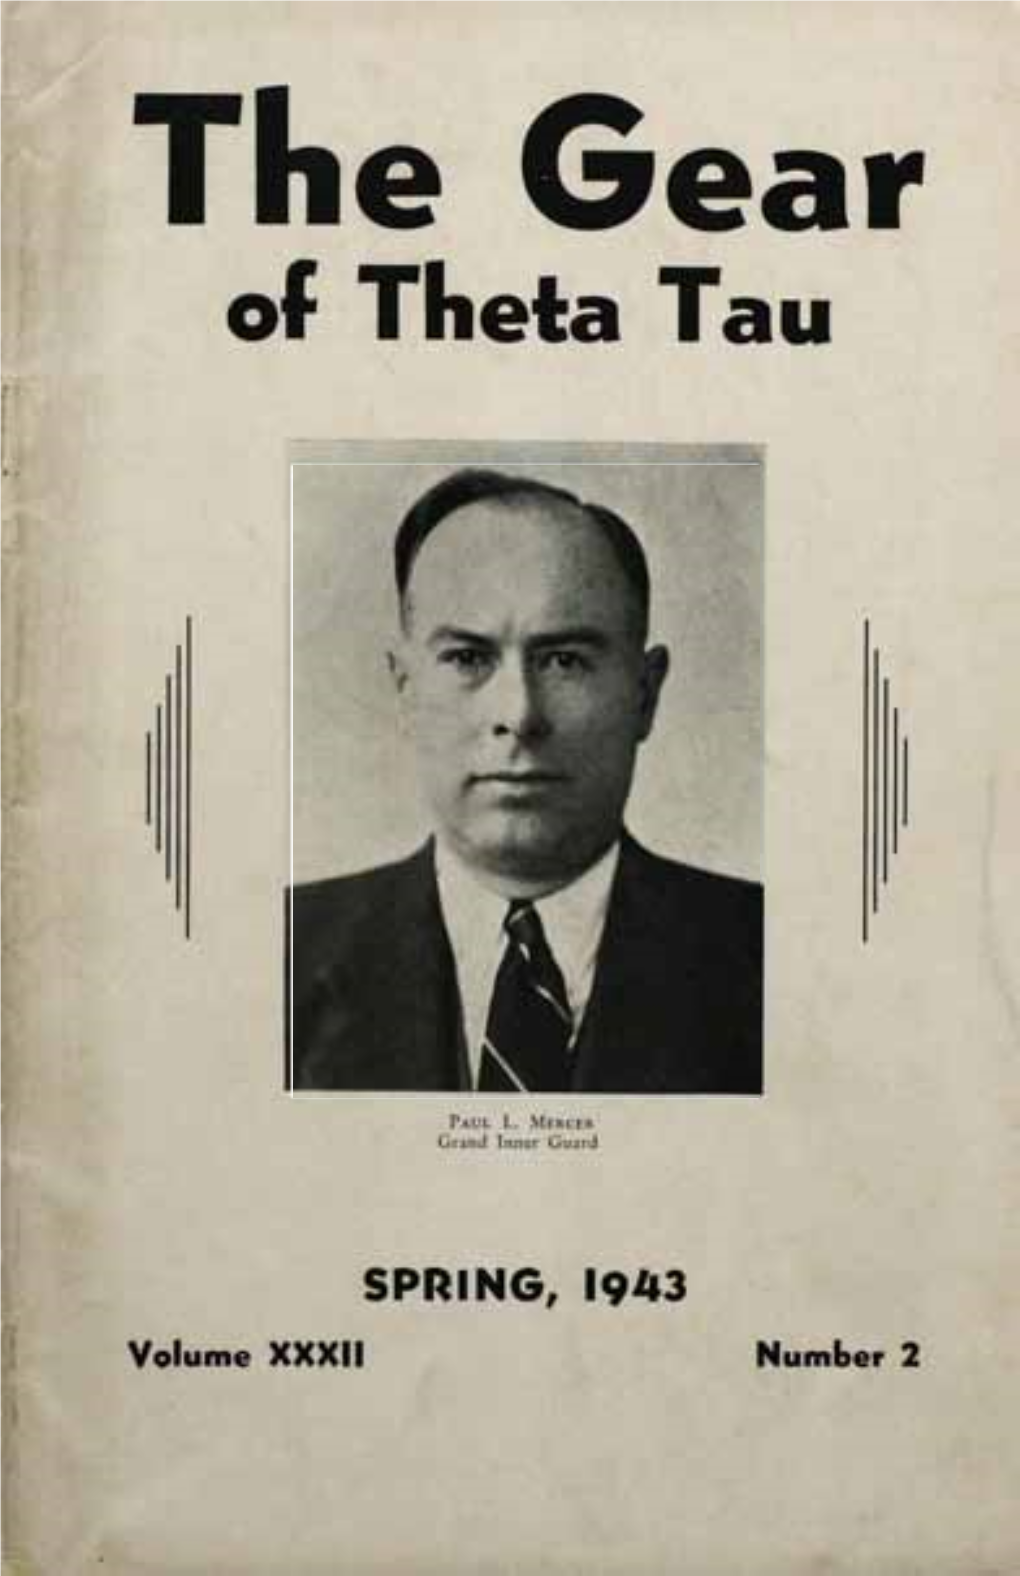 The Gear of Theta Tau